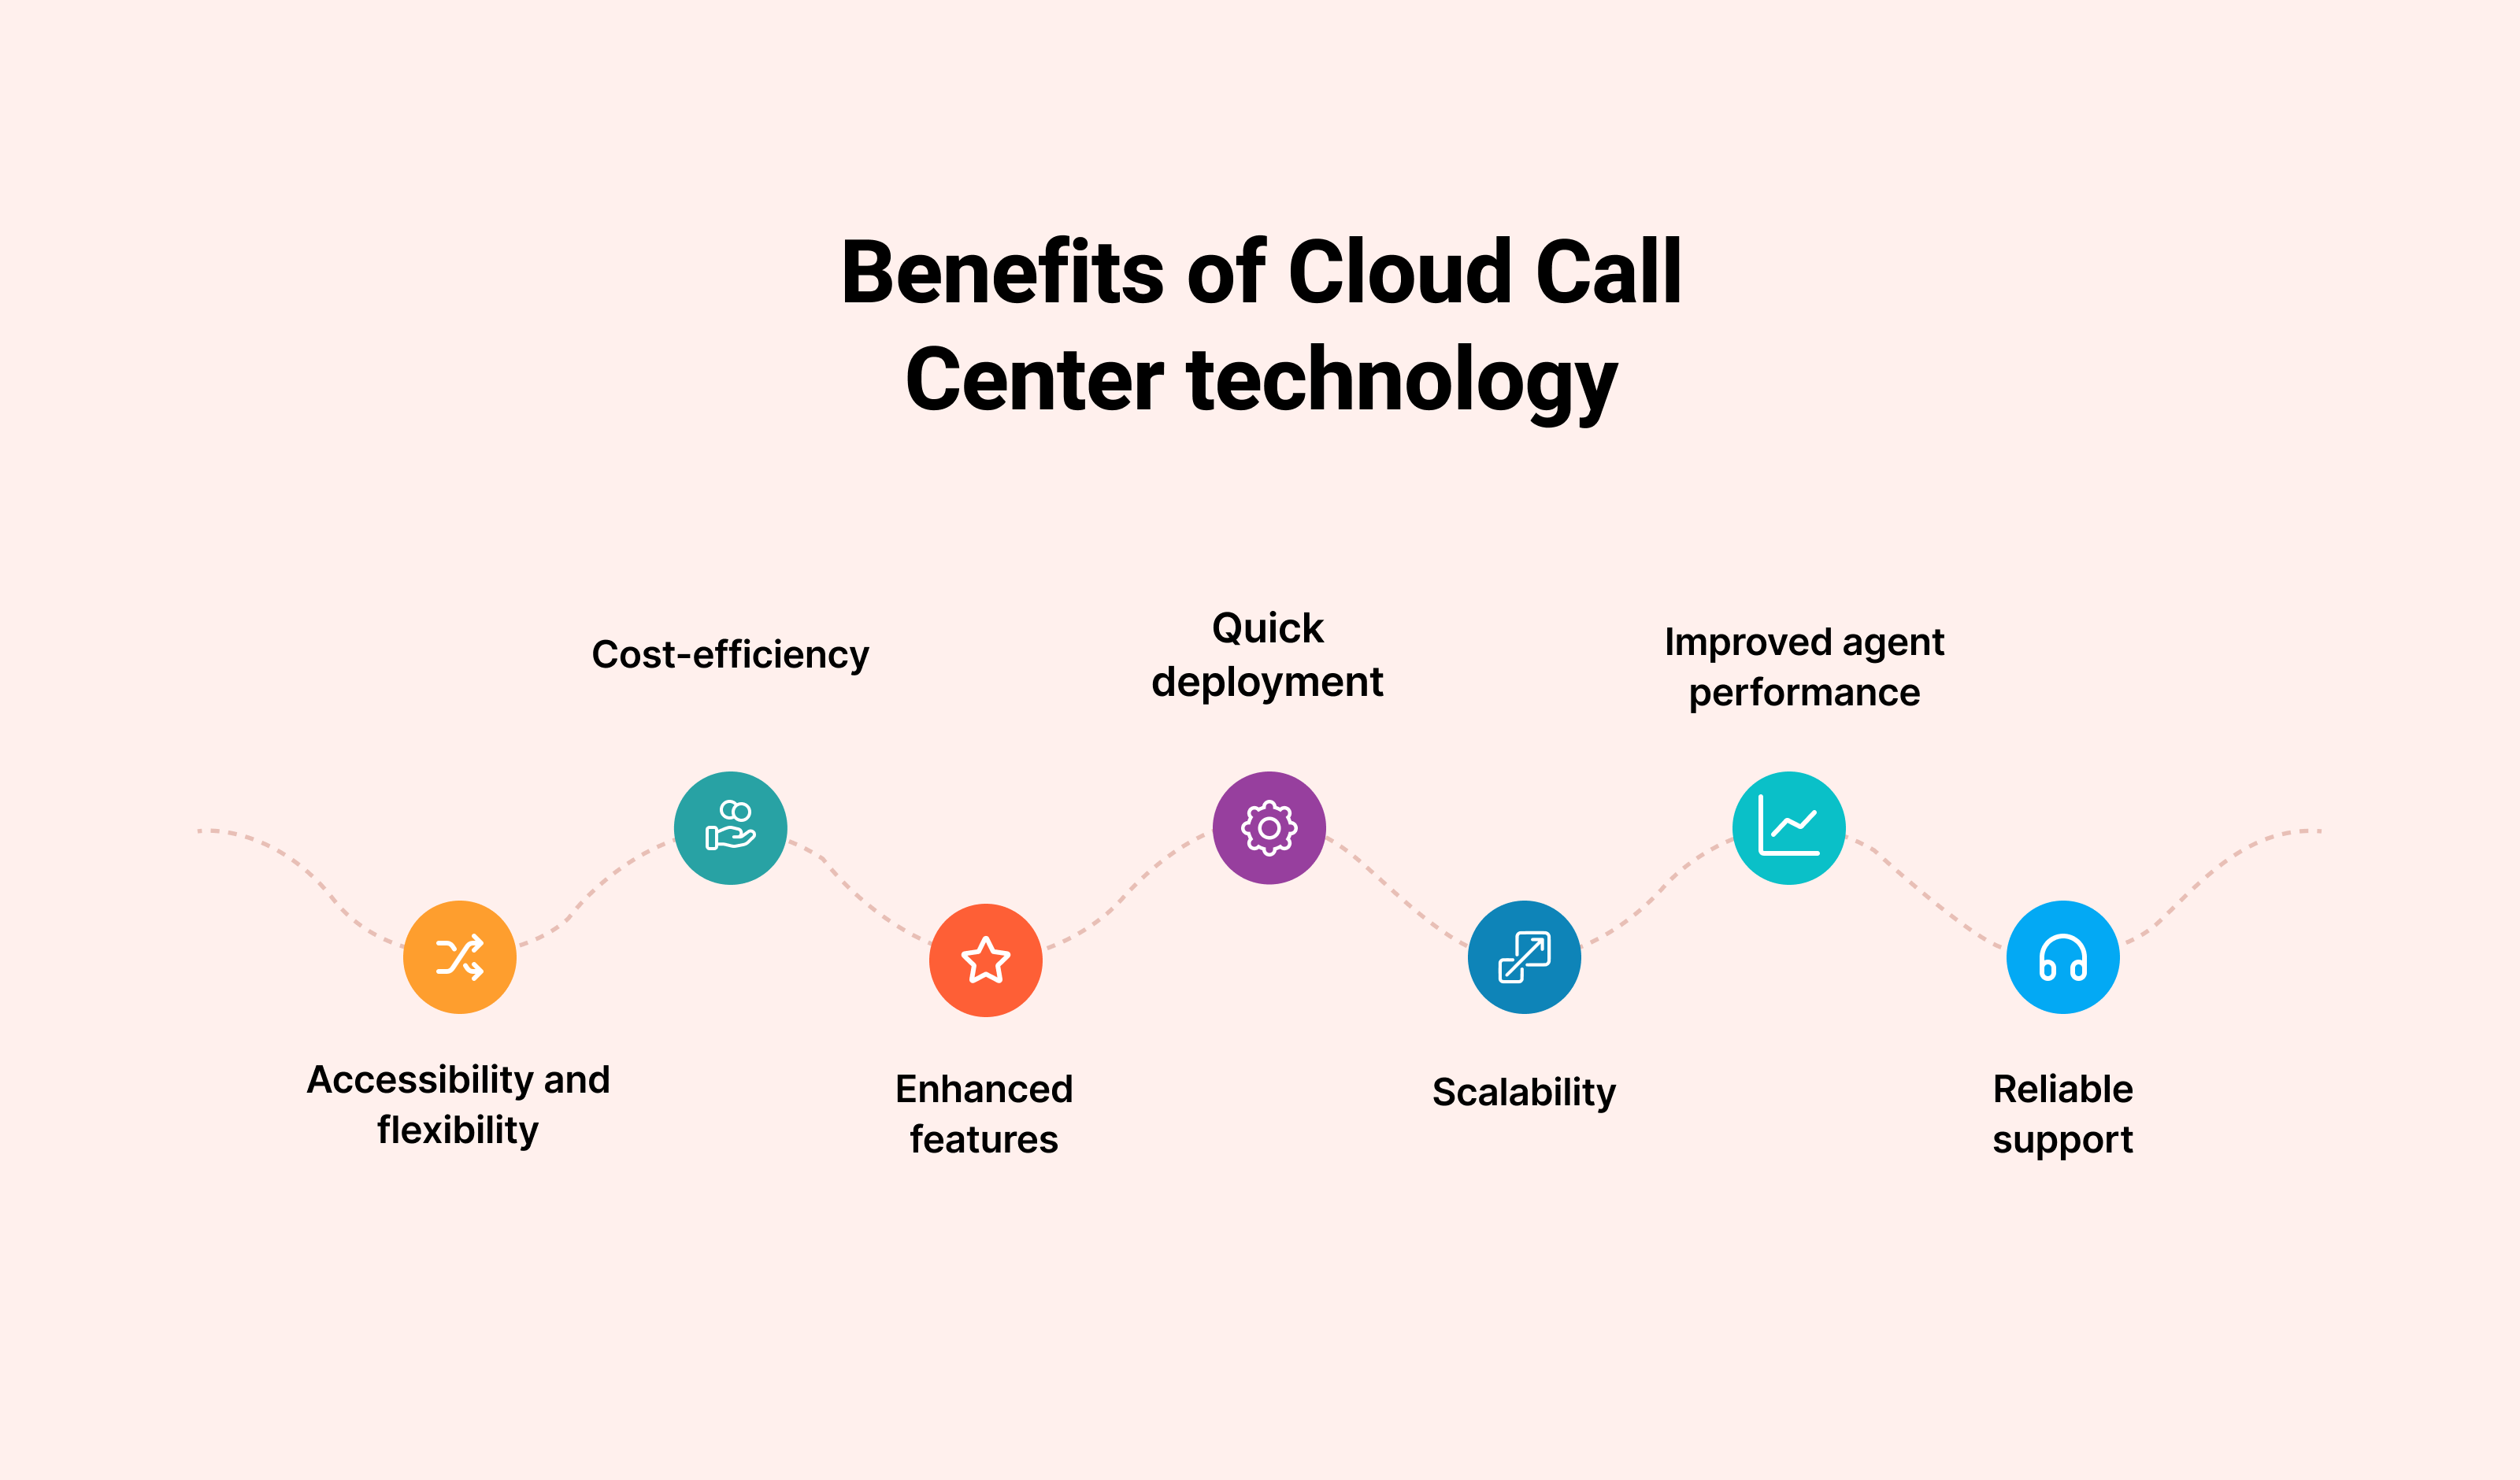 Benefits of Cloud Call Center Technology: